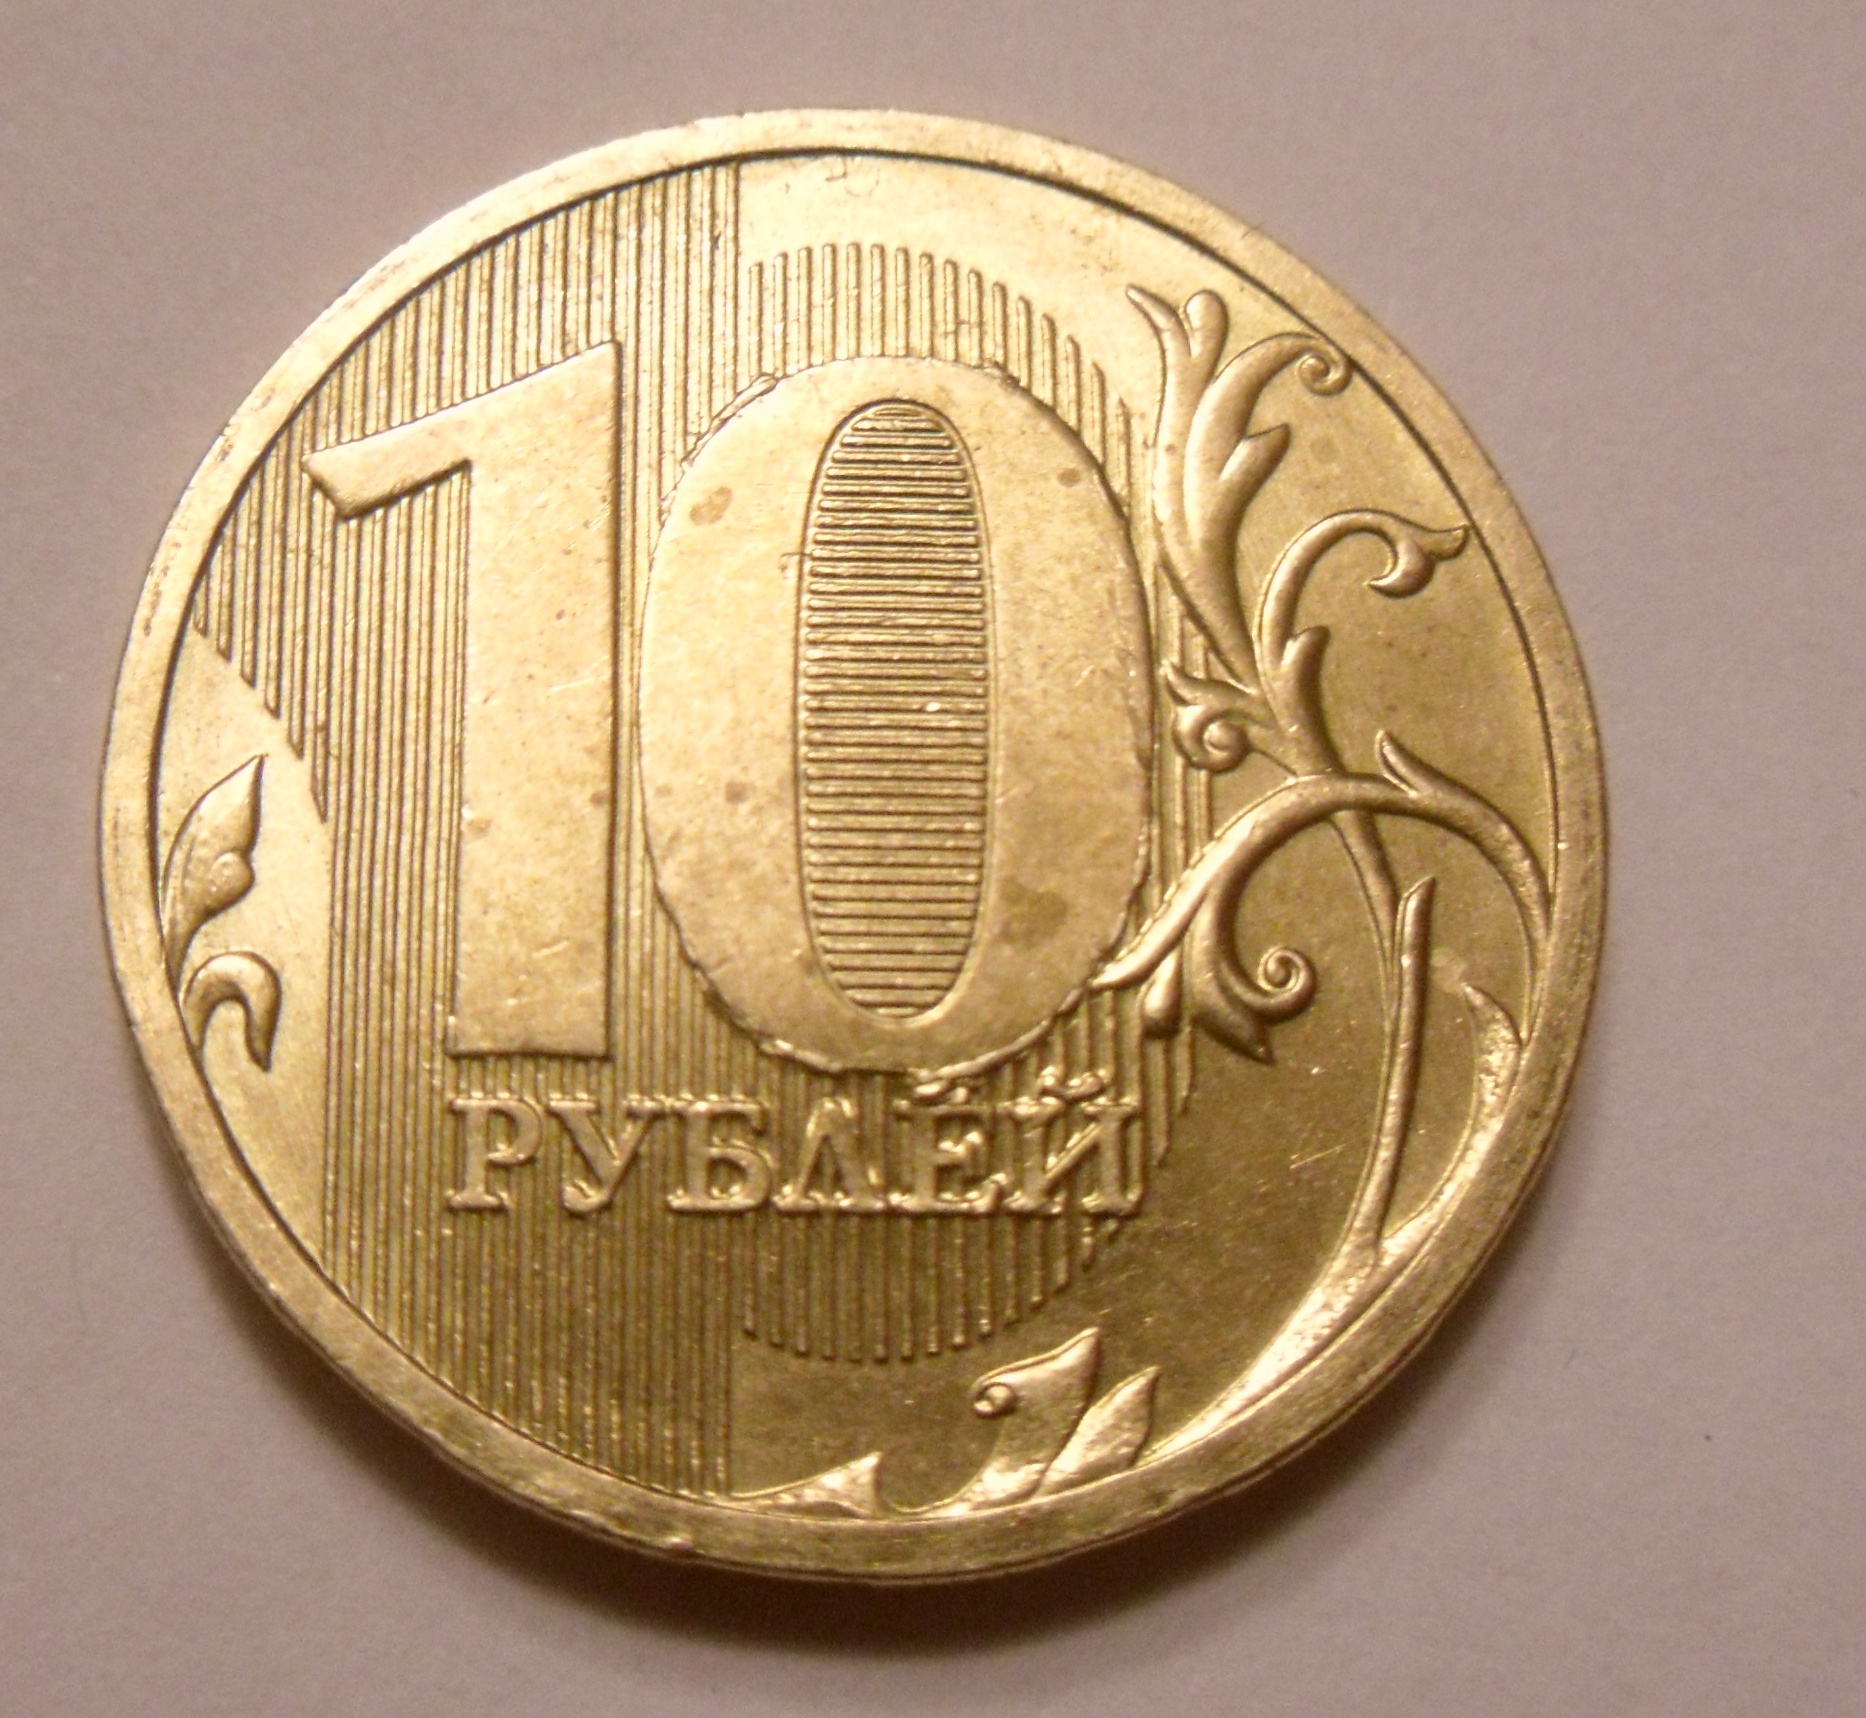 10 рублей. Десять рублей. Брак 10 рублей 2010 года. Бракованные монеты 10 рублей 2010. Бракованные монеты 10 рублей.